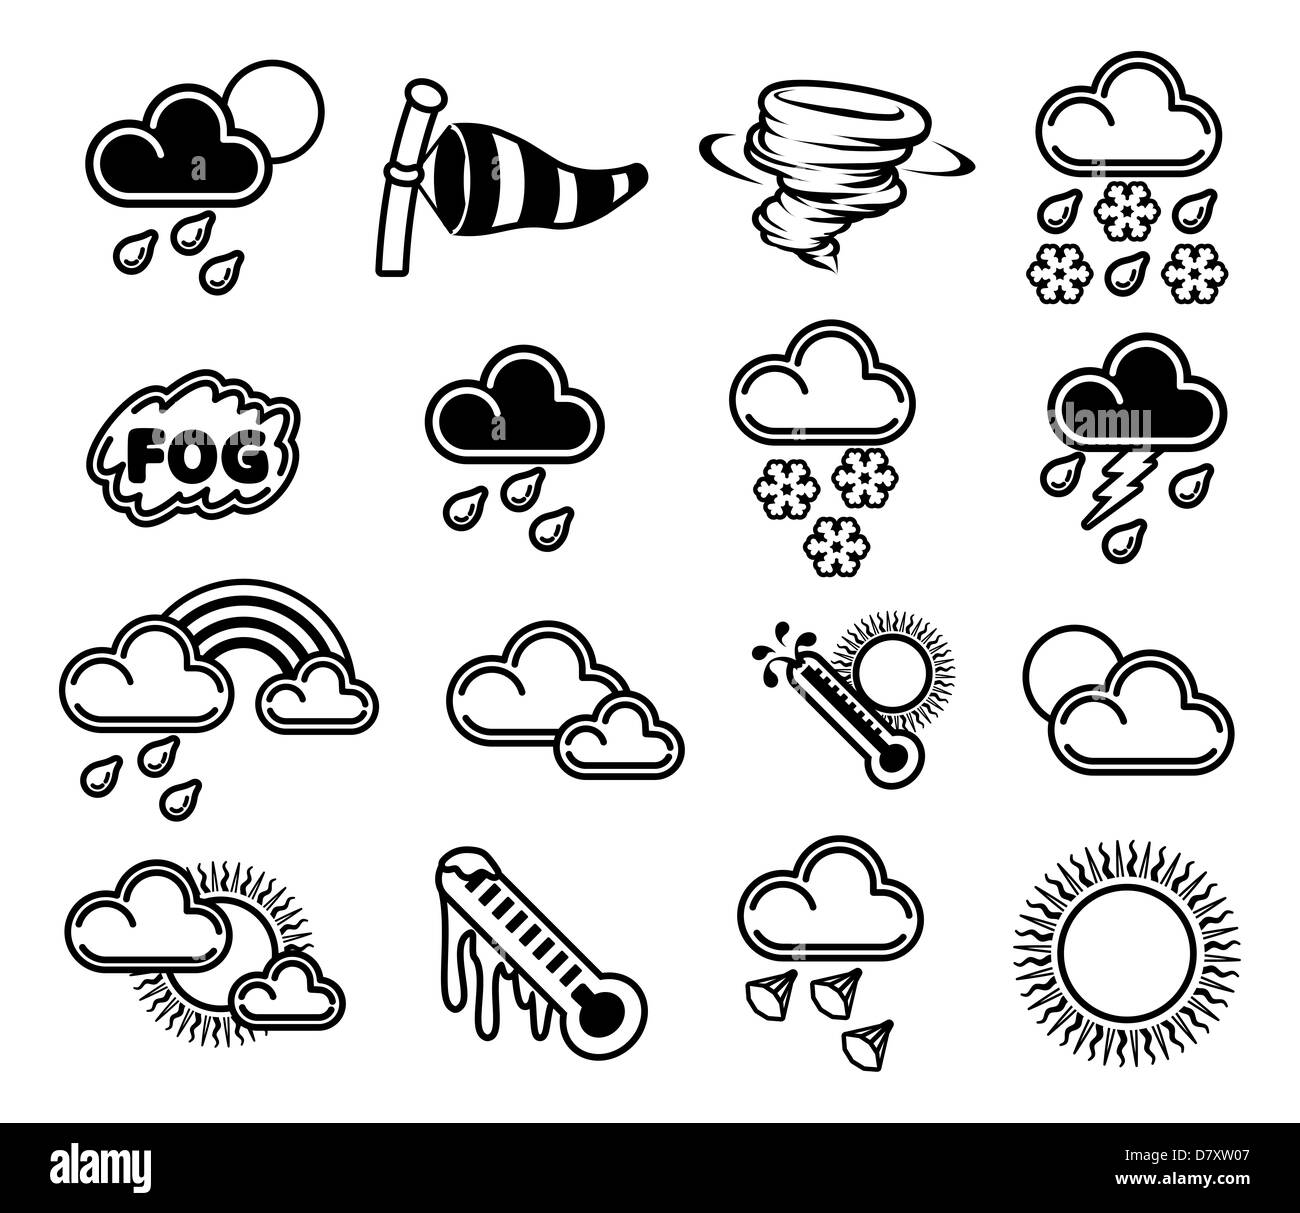 Un ensemble d'icônes météo monochrome comme ceux utilisés dans les prévisions Banque D'Images